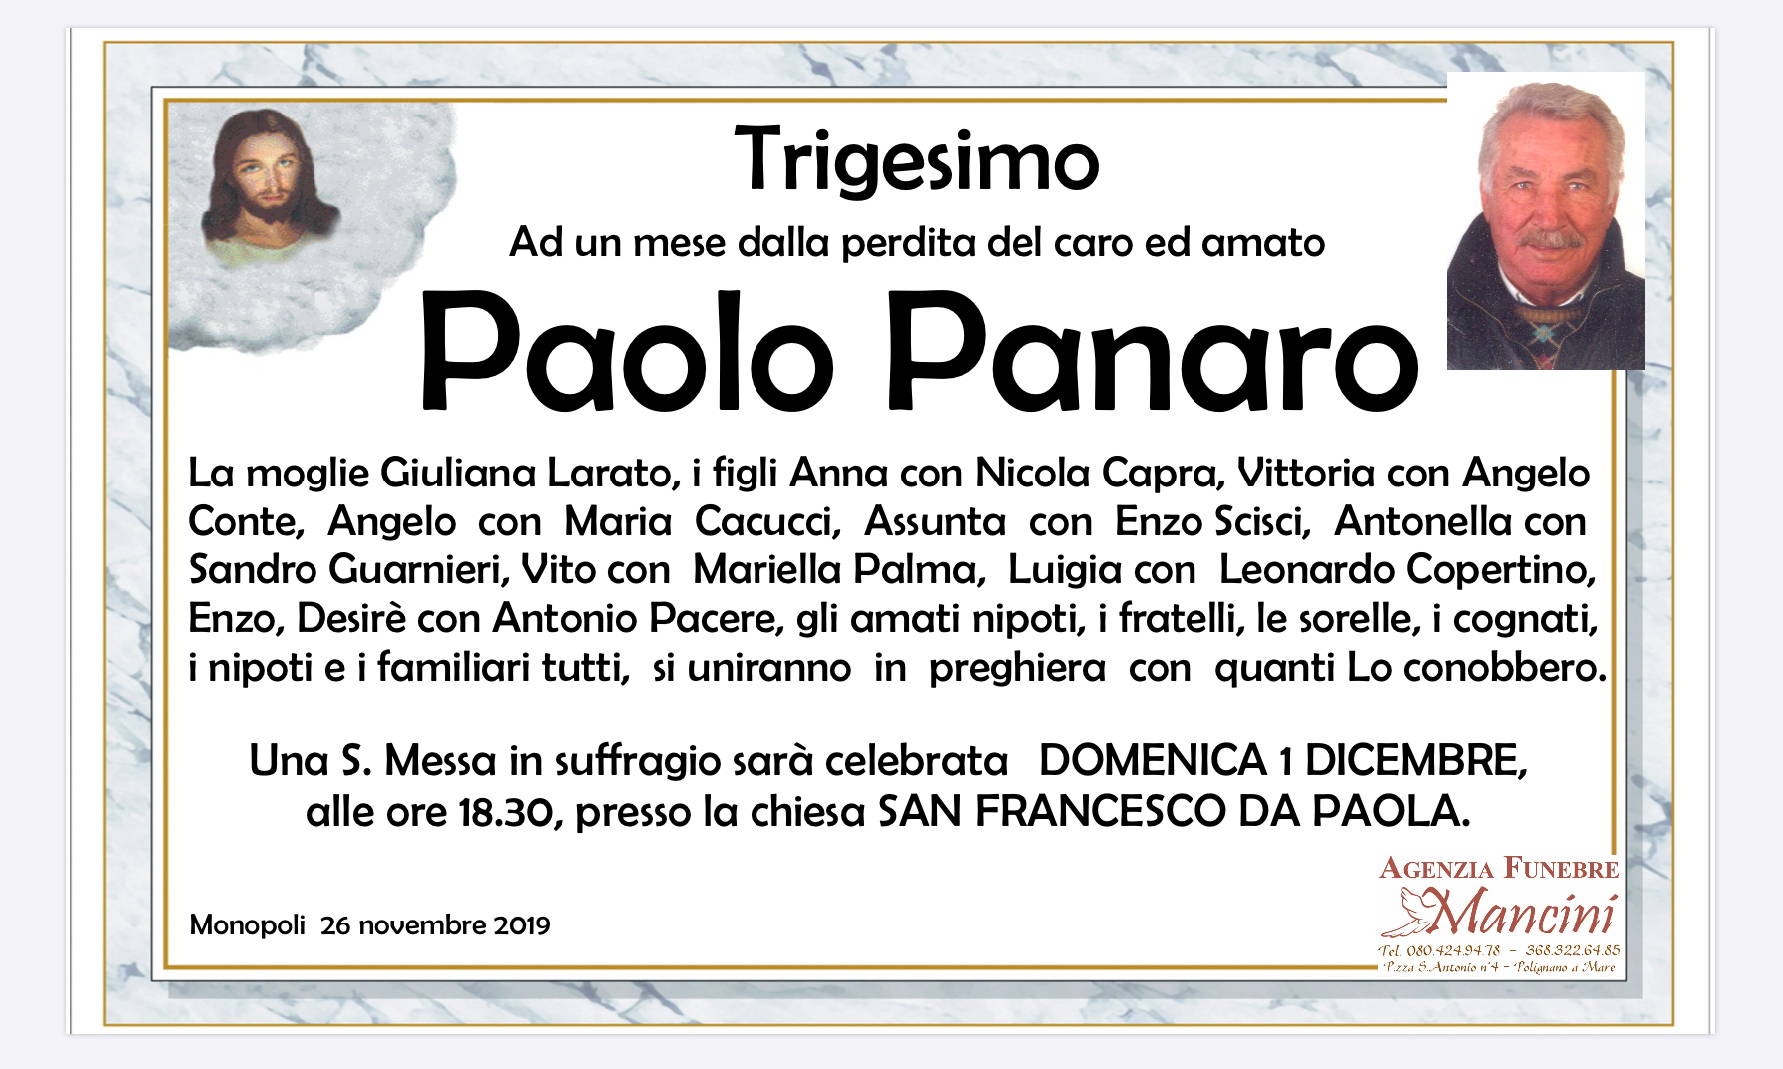 Paolo Panaro